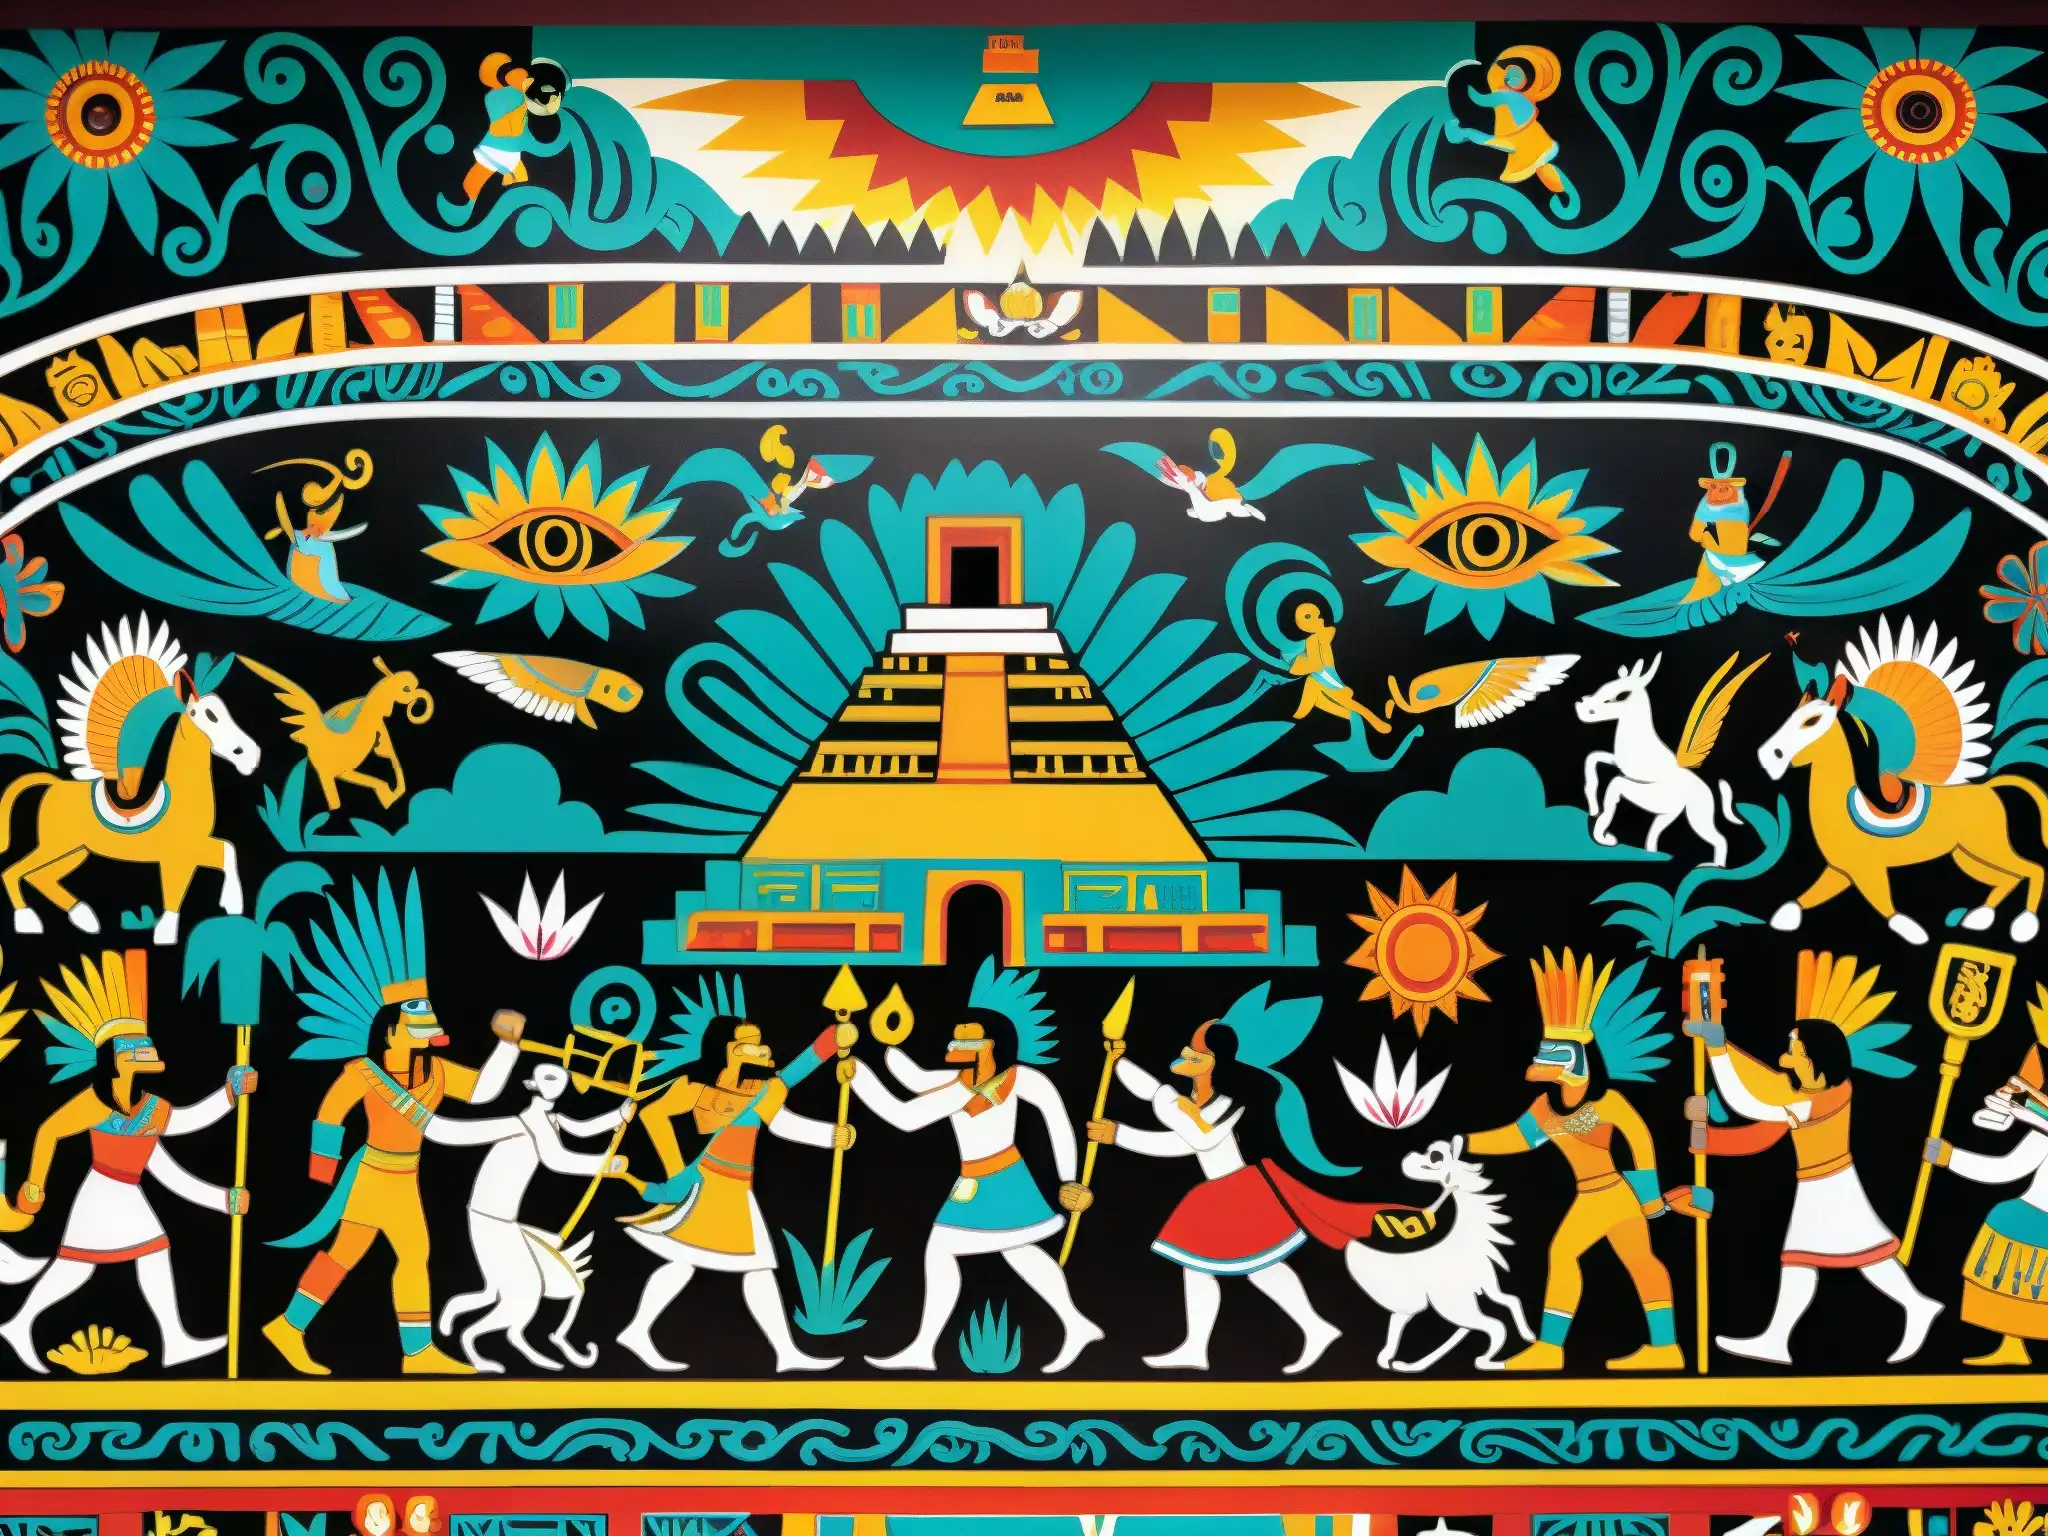 Un vibrante mural representa el Mictlán azteca, lleno de colores y detalles que narran mitos y leyendas urbanas del Mictlán